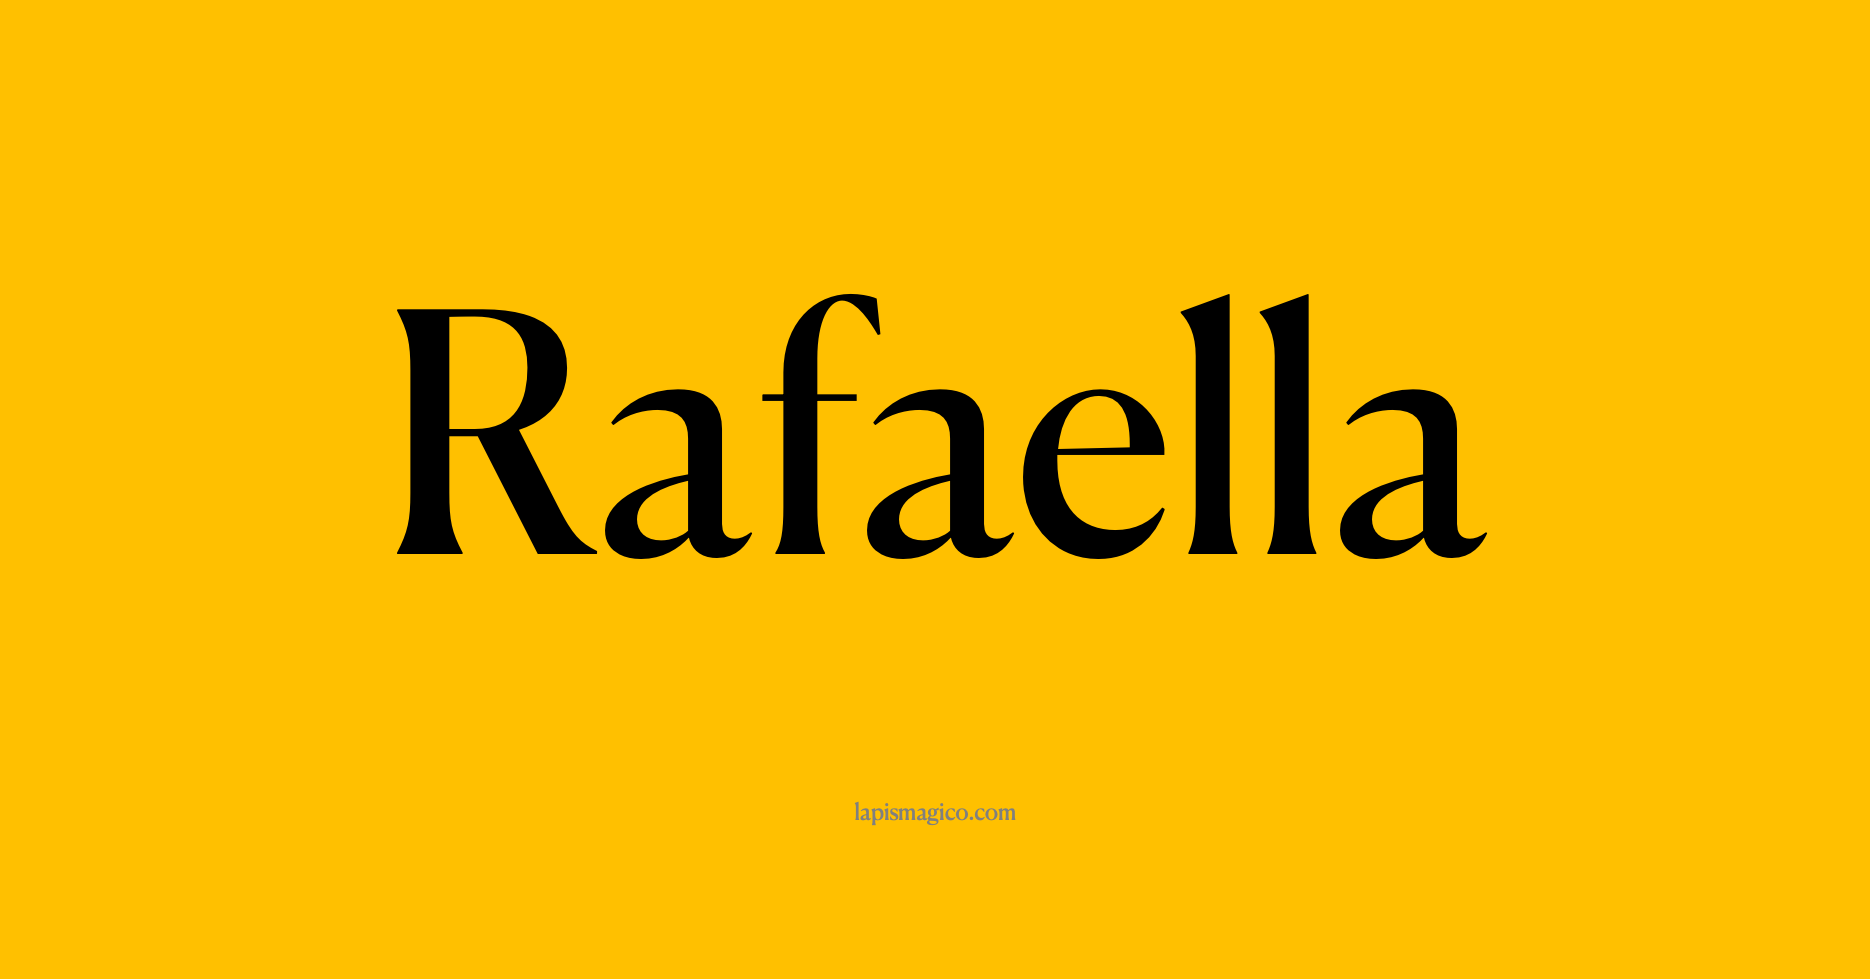 Nome Rafaella